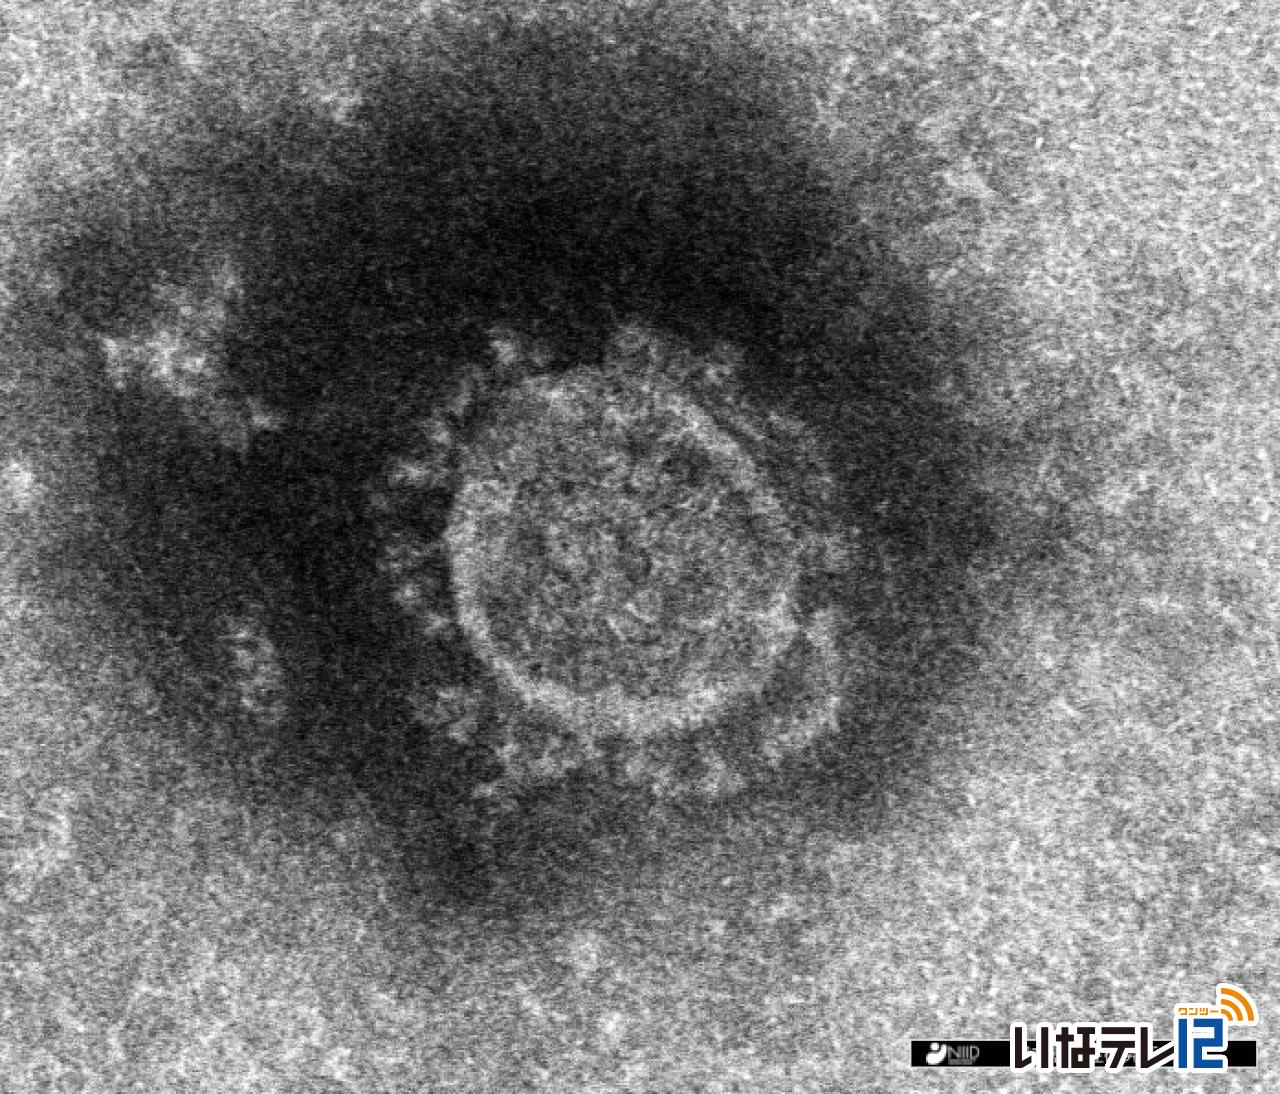 長野県内で新たに６人新型コロナ感染確認